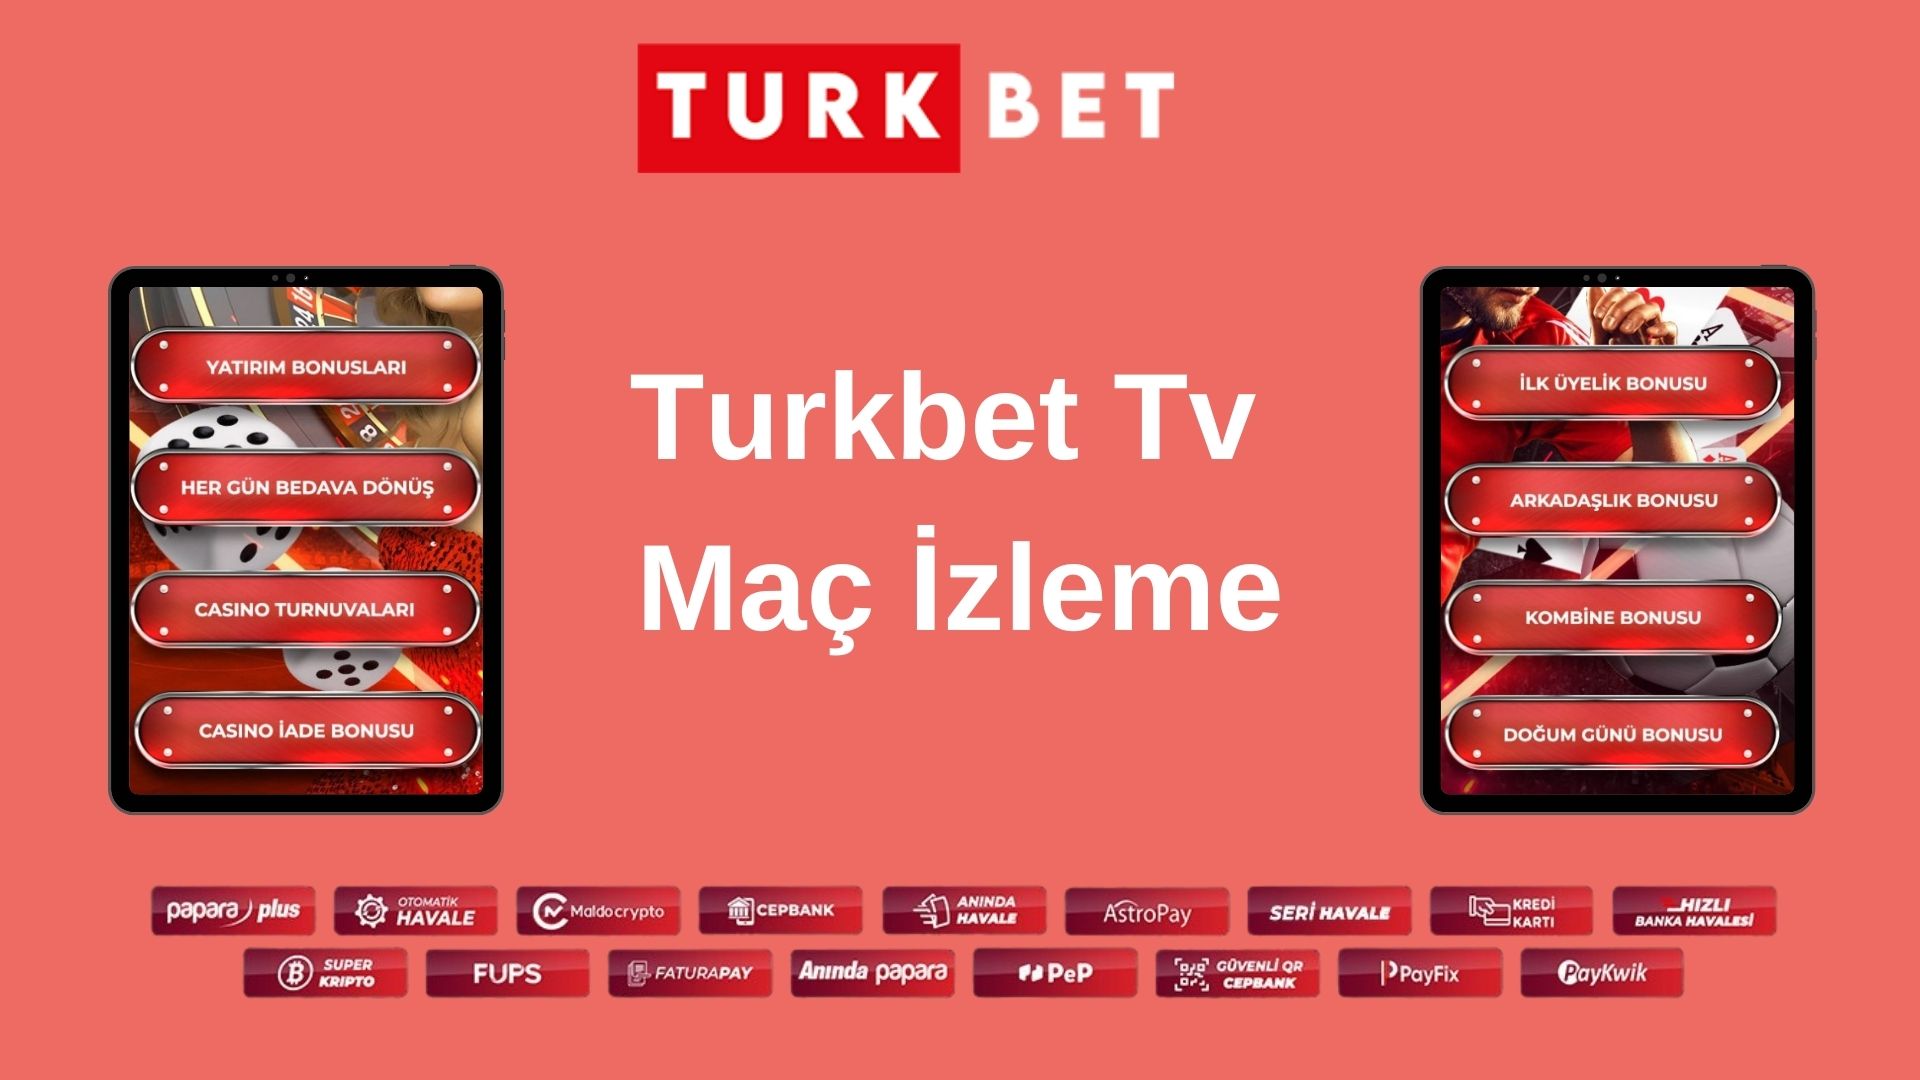 Turkbet Tv Maç İzleme